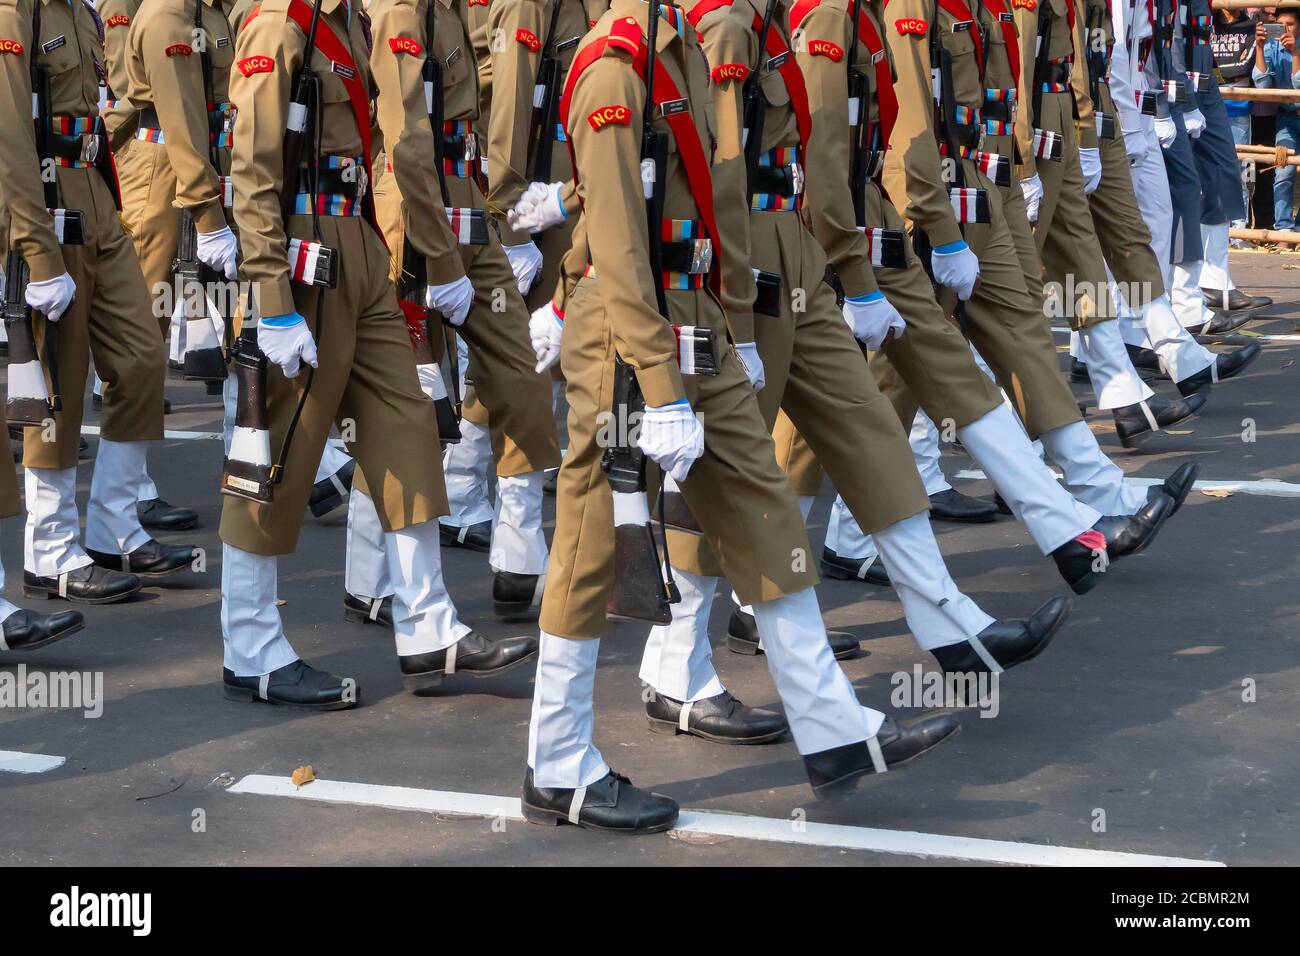 Kolkata, Bengala Occidentale, India - 26 Gennaio 2020 : cadetti del corpo nazionale del cadetto dell'India (NCC) stanno marciando il passato a ritmo, in abiti kaki, cappello rosso. Foto Stock